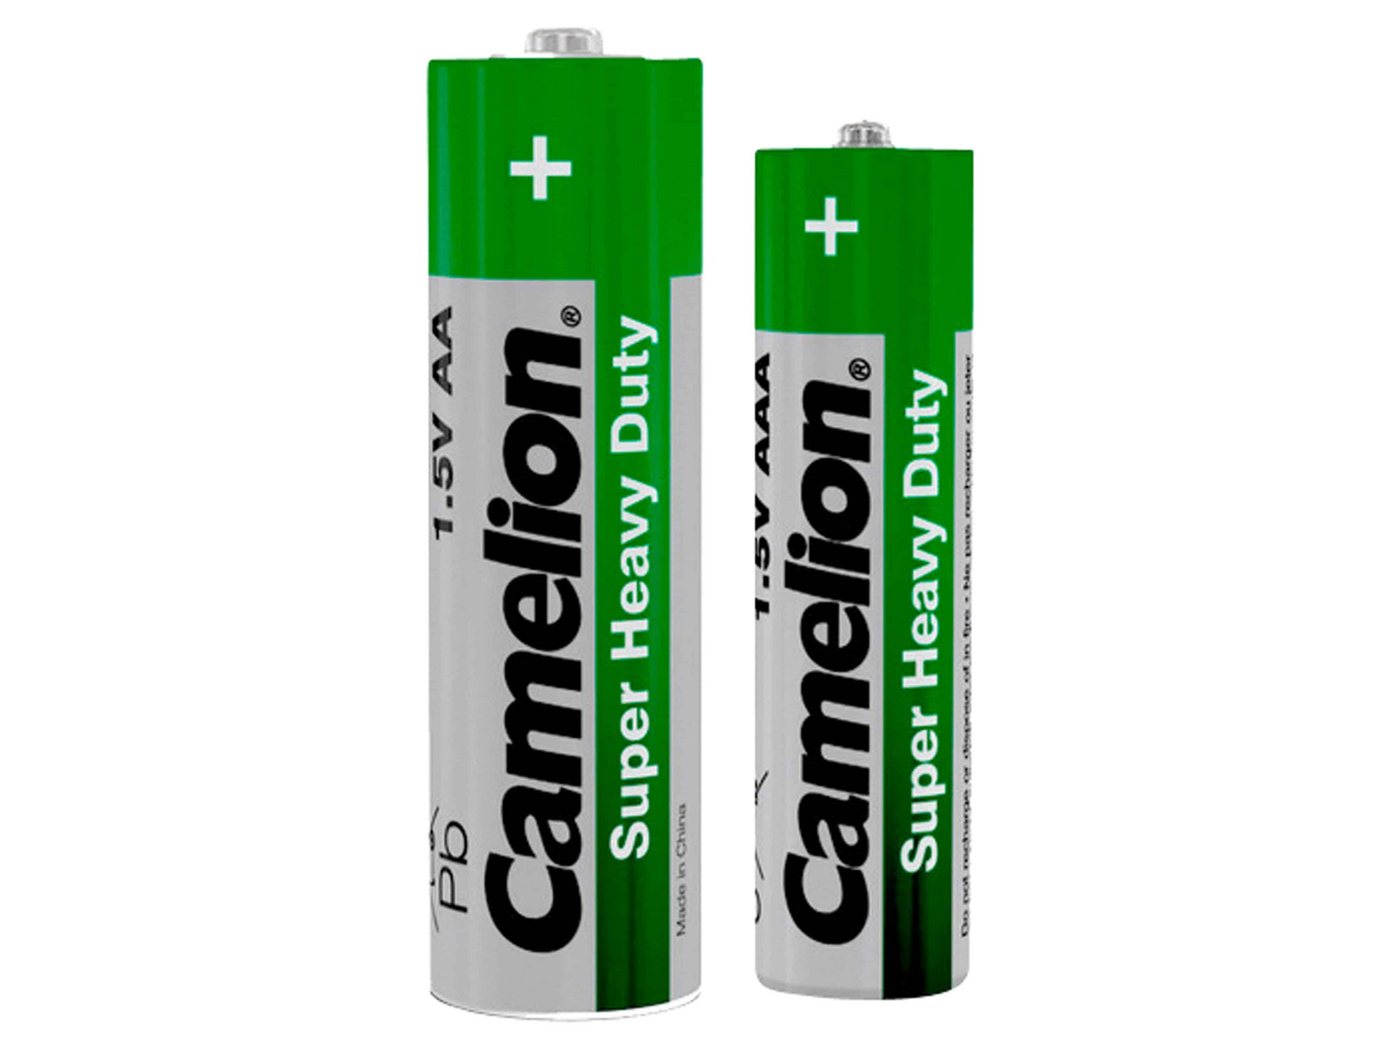 Camelion CAMELION Batterie-Set FPG-GB72, 72 St., Zink-Kohle Batterie von Camelion